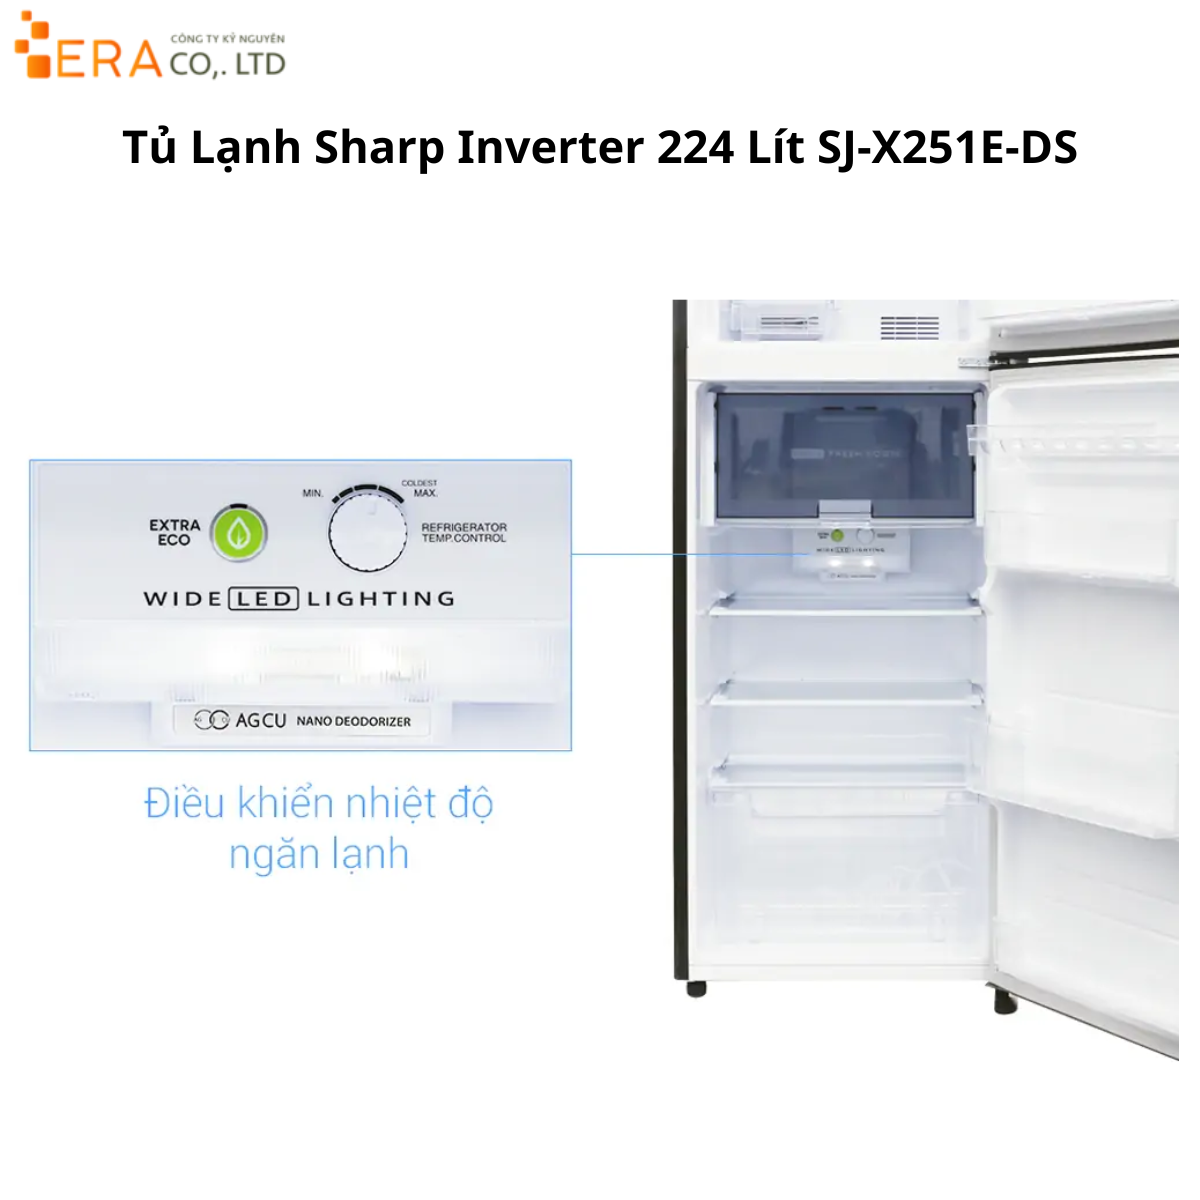  Tủ Lạnh Sharp Inverter 224 Lít SJ-X251E-DS 